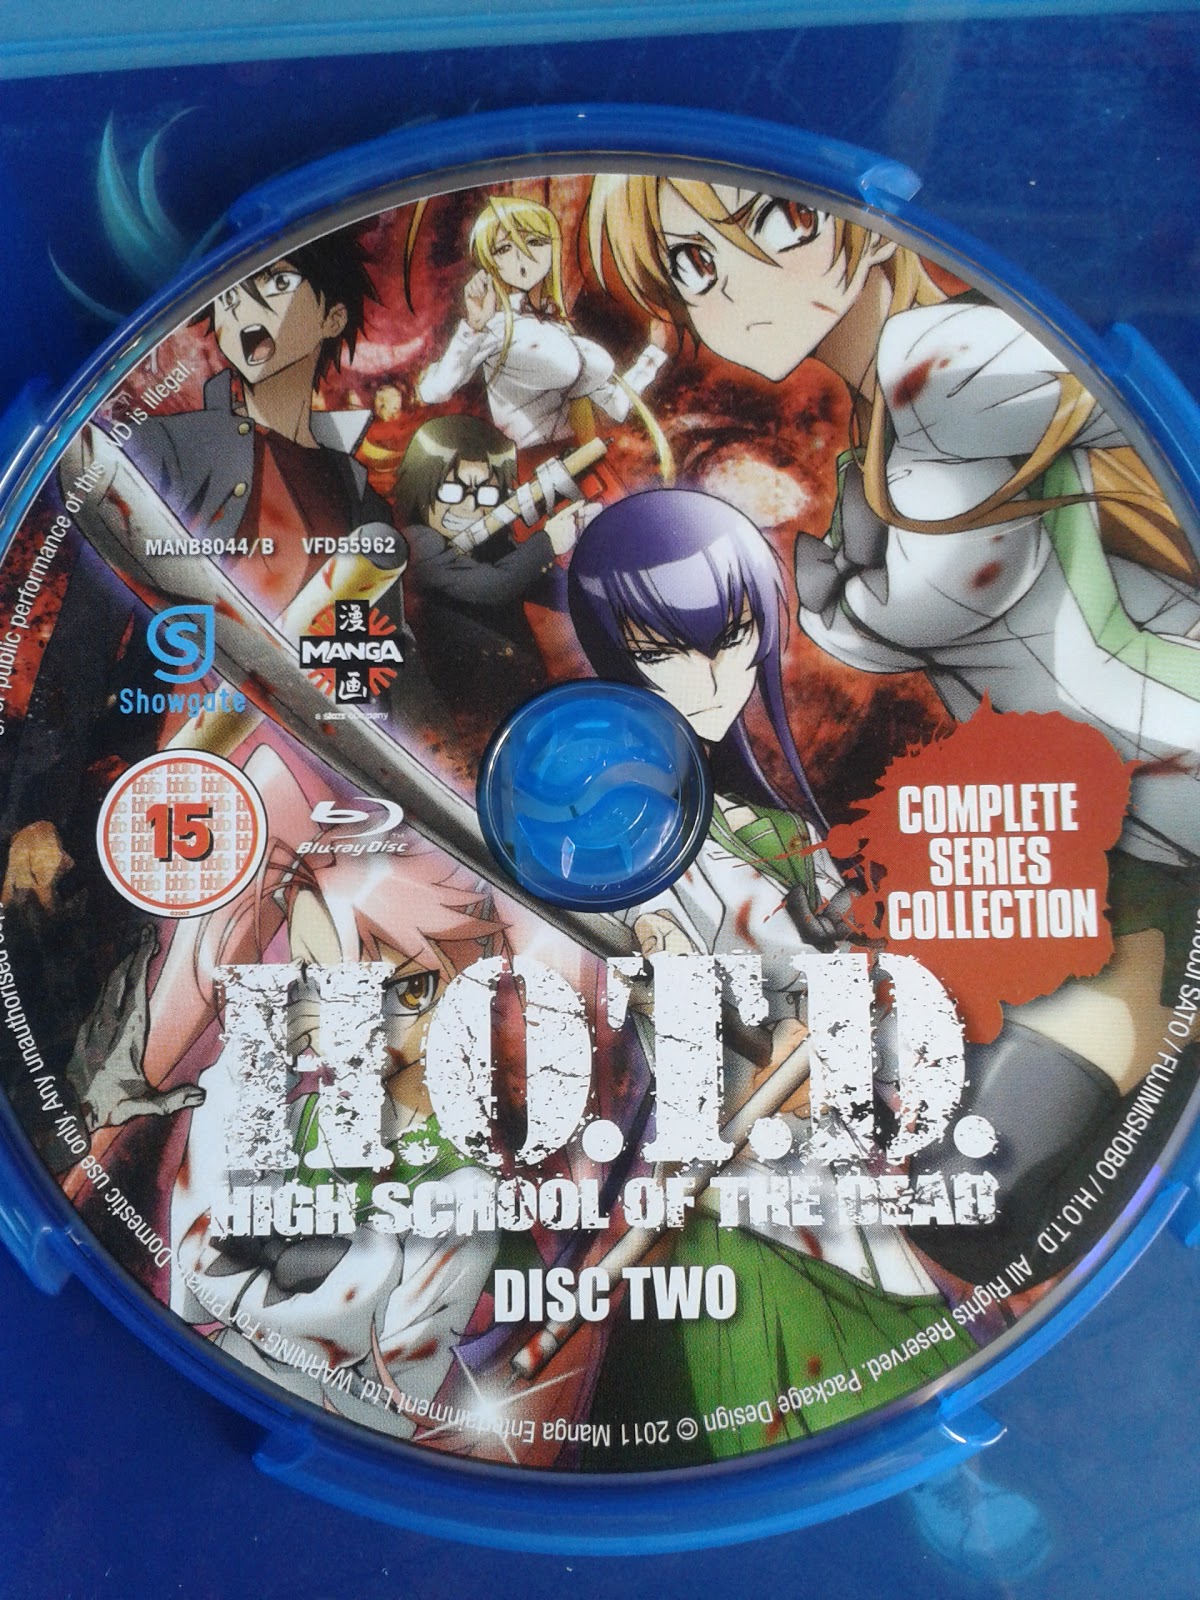 Drifters – Novos episodios do anime em DVD e Blu-Ray